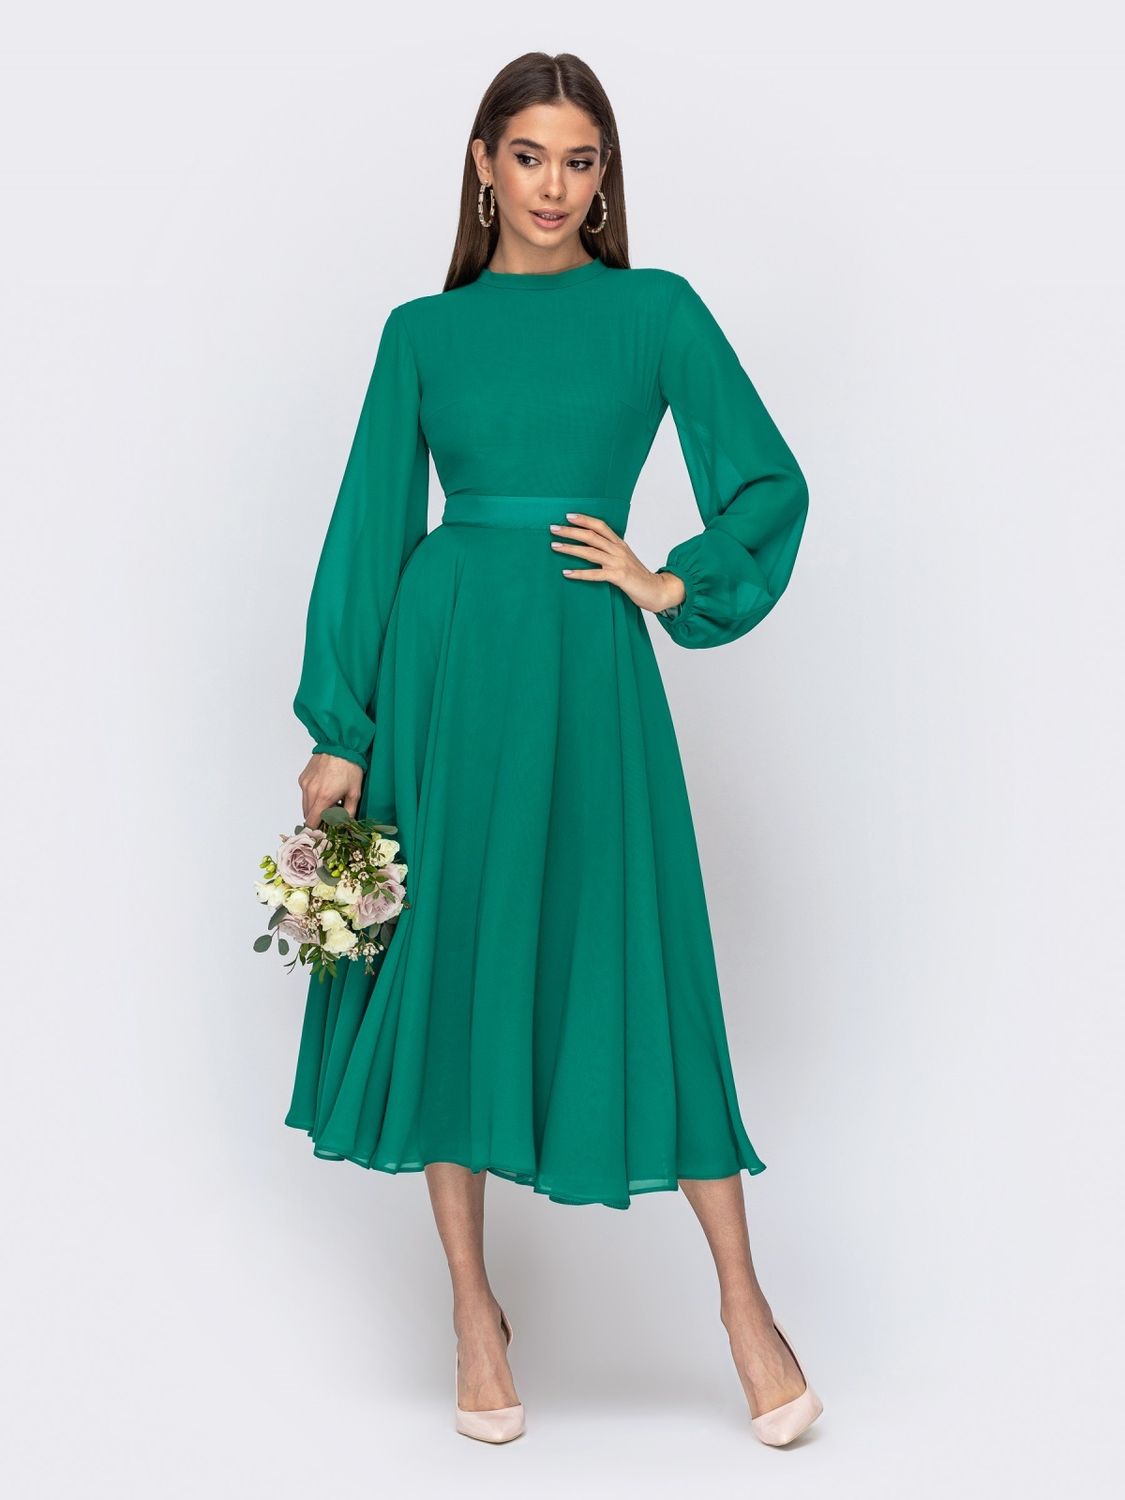 Нарядне шифонове плаття зі спідницею-сонце зеленого кольору - фото